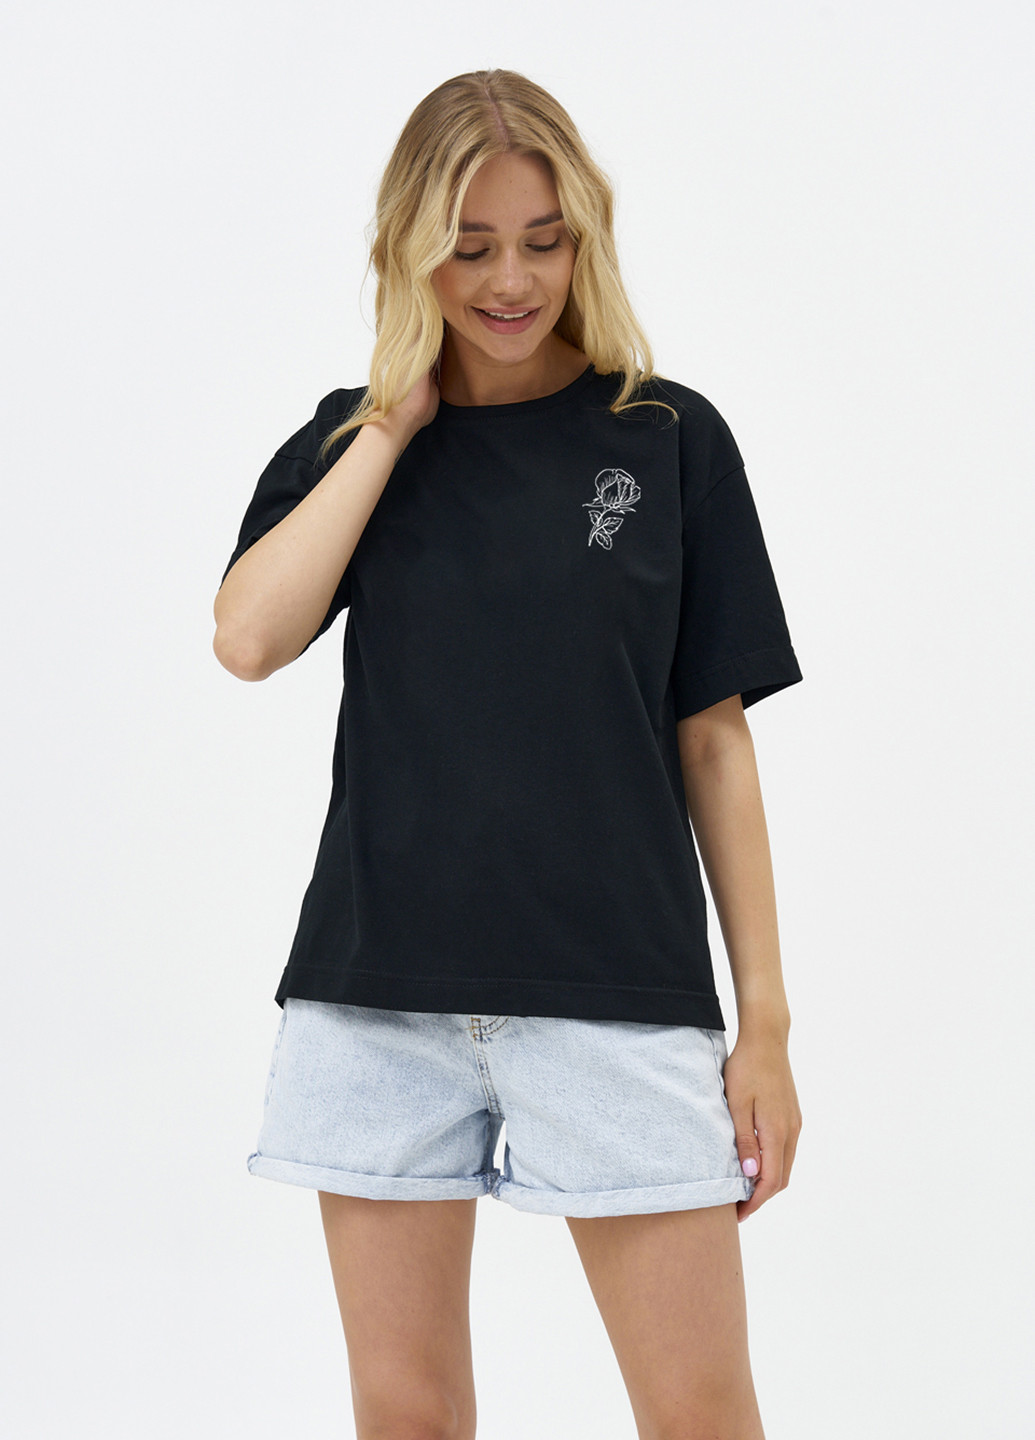 Черная летняя футболка женская оверсайз flower KASTA design